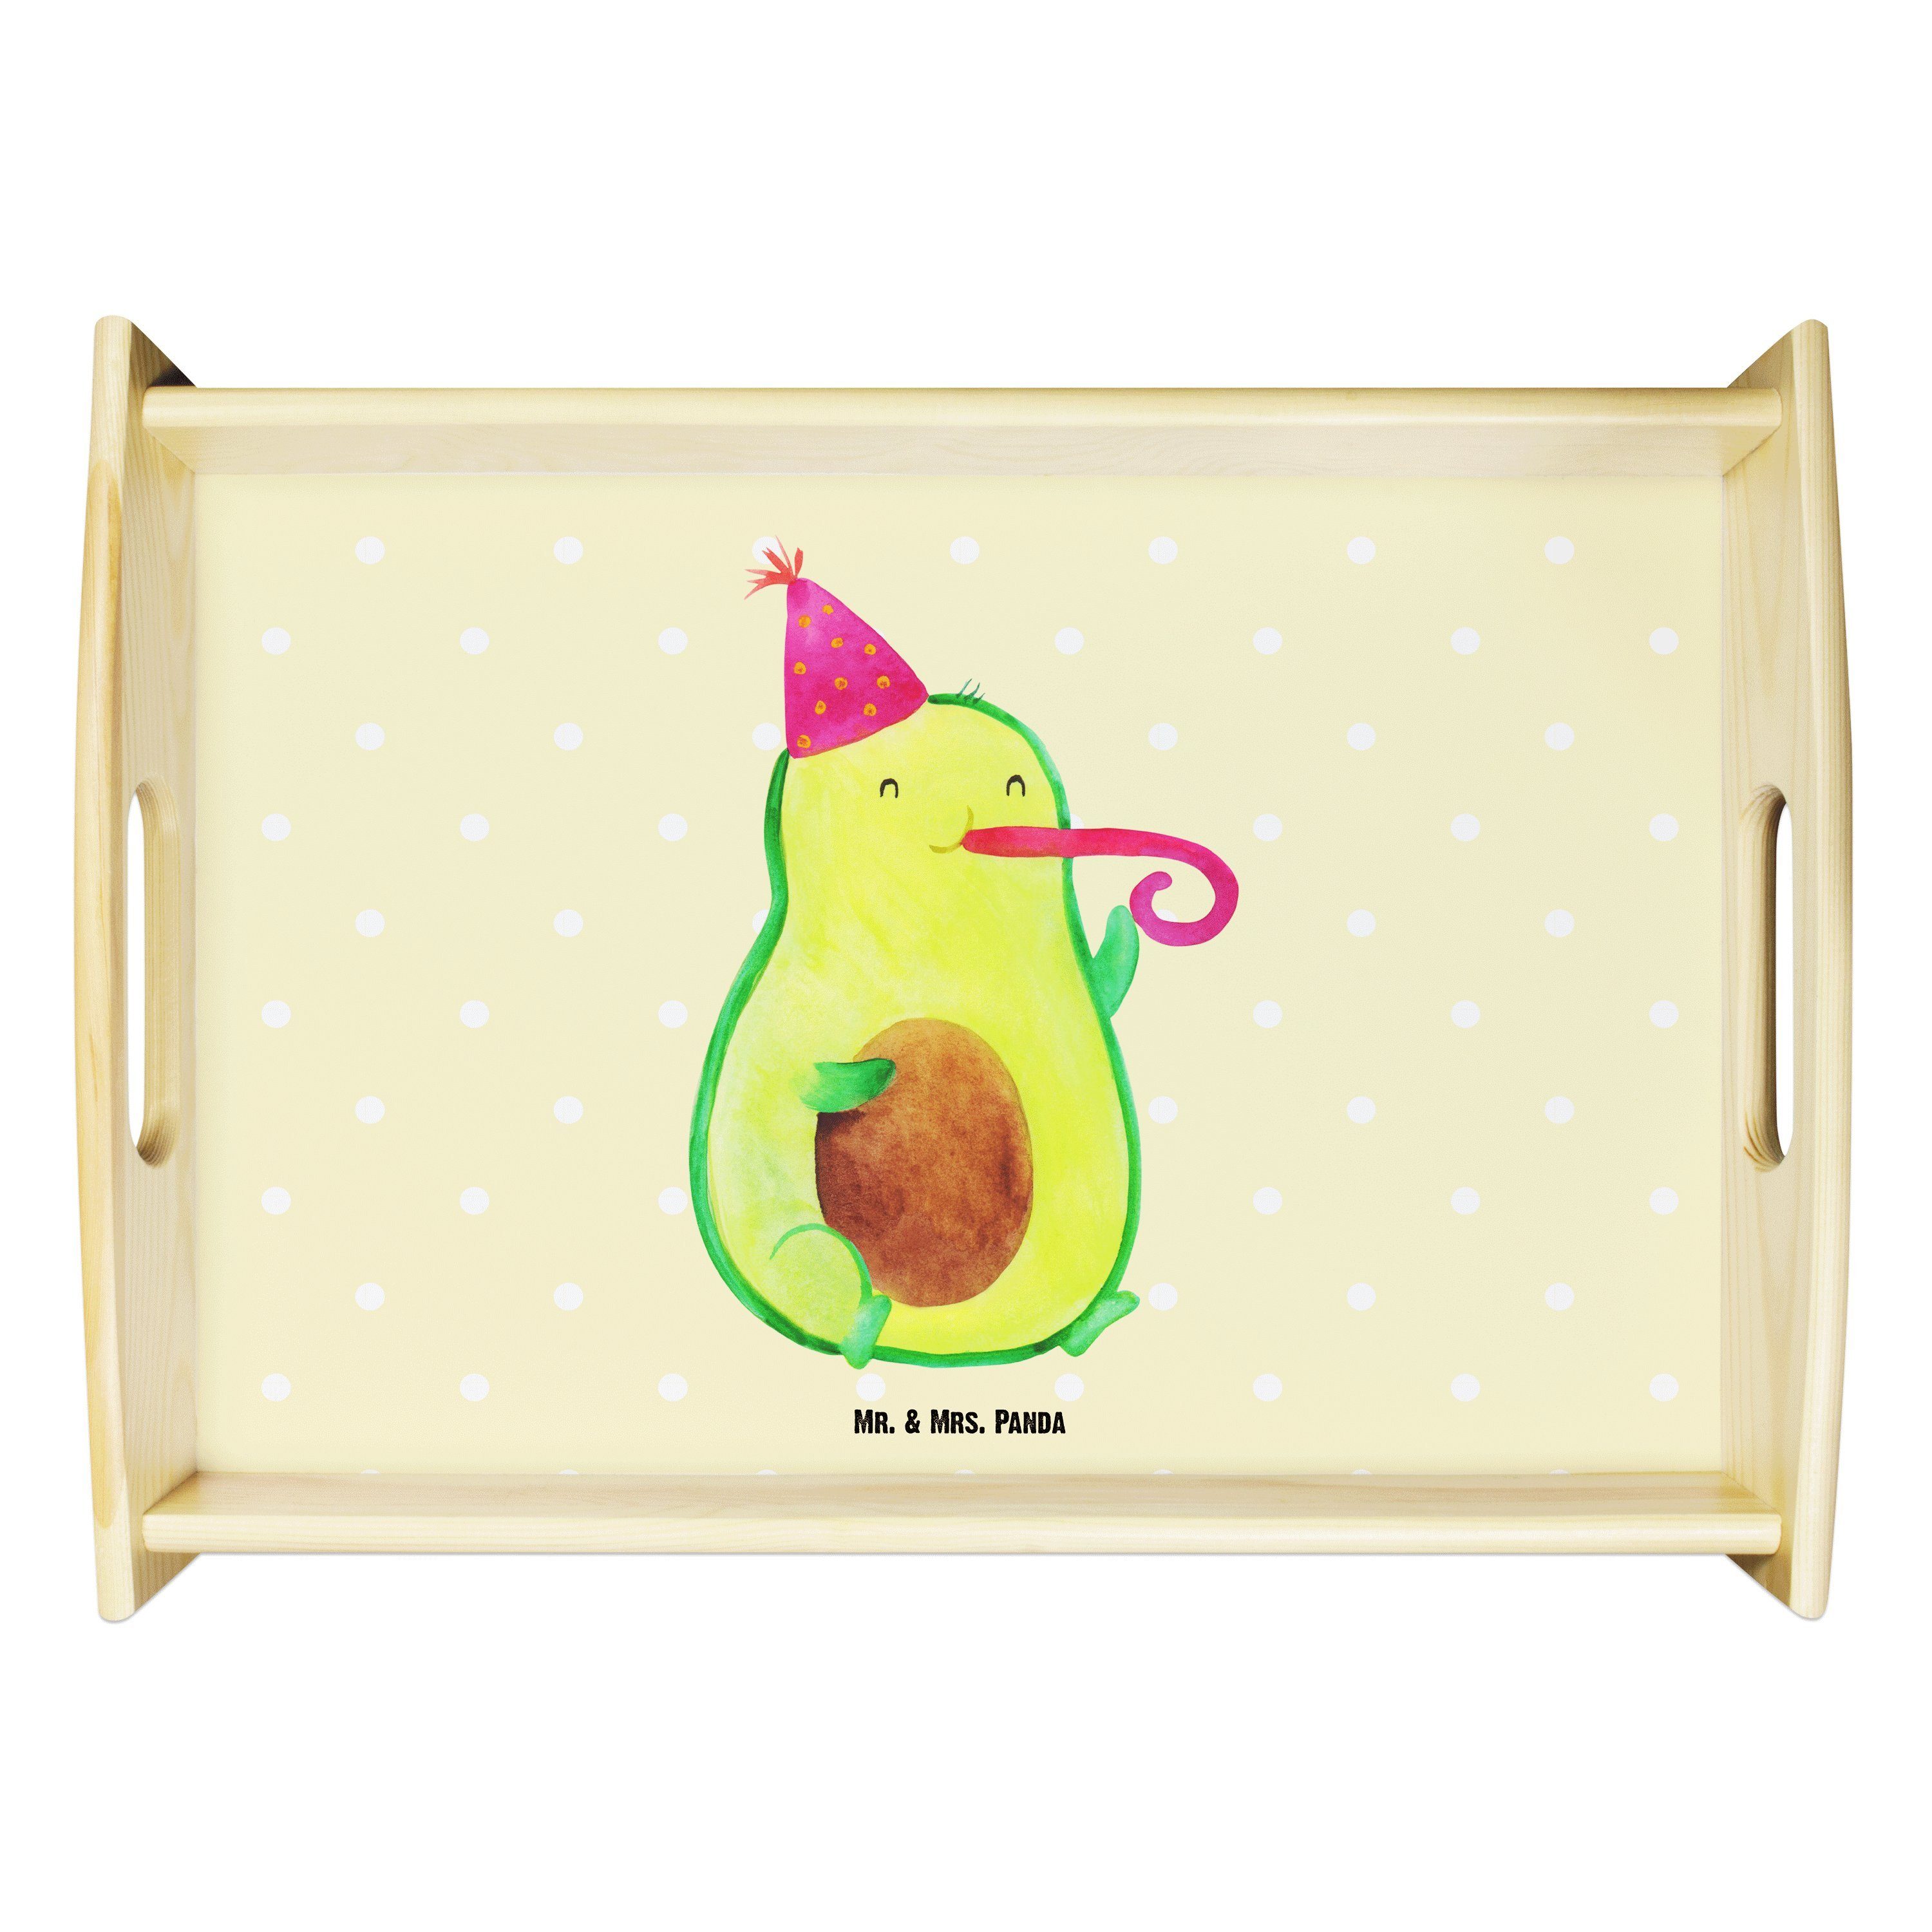 Mr. & Mrs. Panda Tablett Avocado Partyhupe - Gelb Pastell - Geschenk, Gesund, Holztablett, Tab, Echtholz lasiert, (1-tlg)